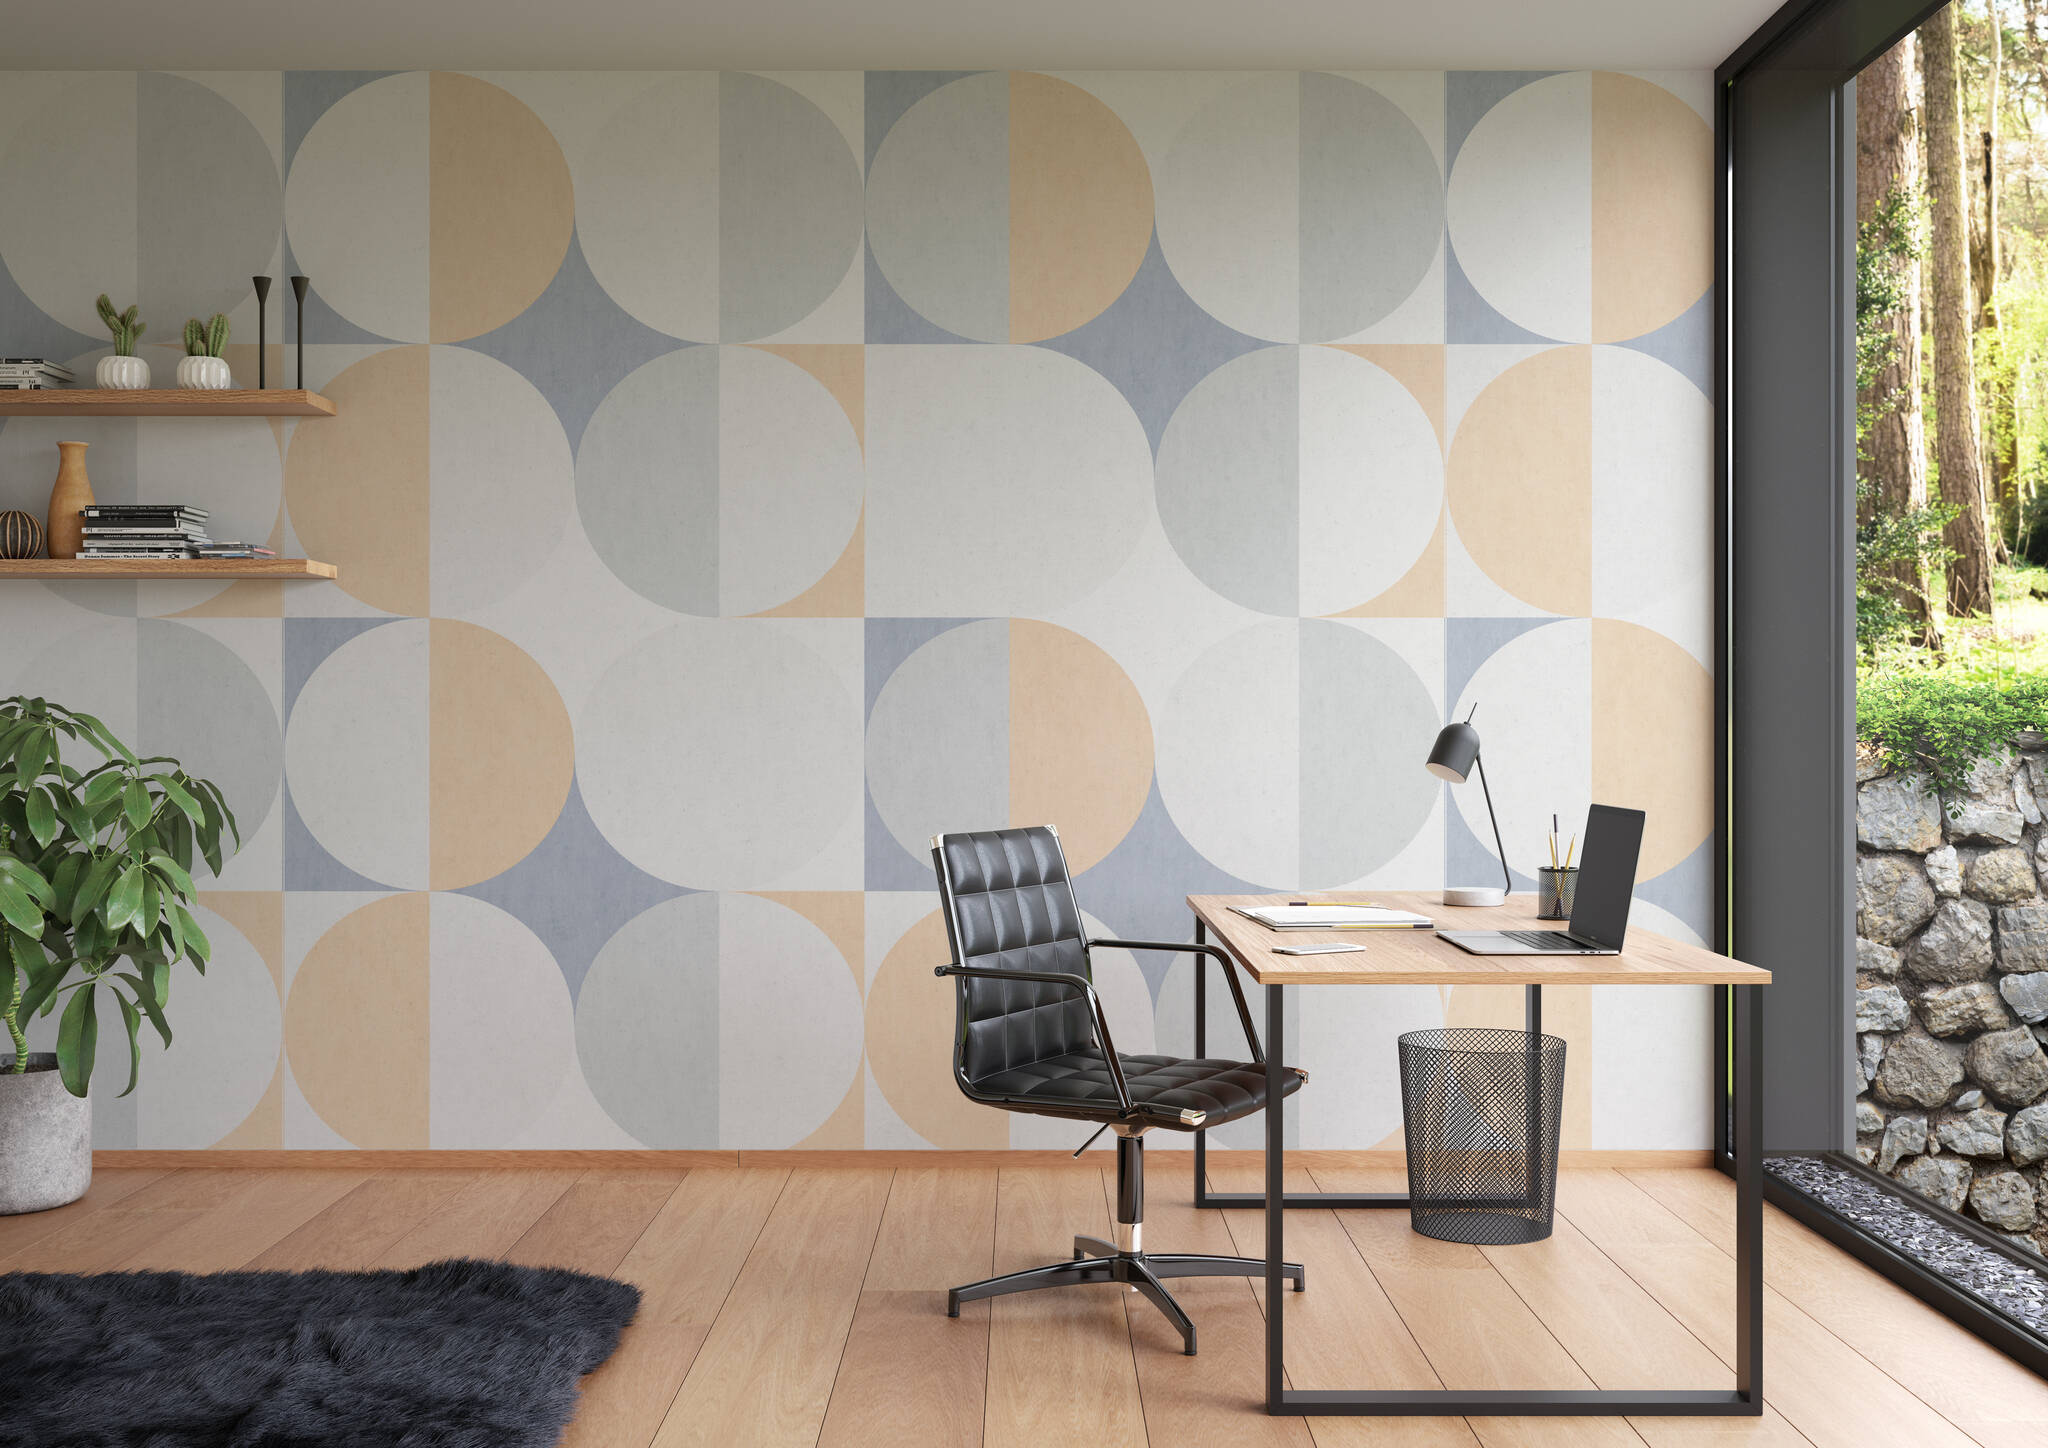 Arbeitszimmer mit Wandbild - Retro-Charme und doch modern - hier schließt sich der Kreis mit halbrunden Formen in Grau, Blau & Beige